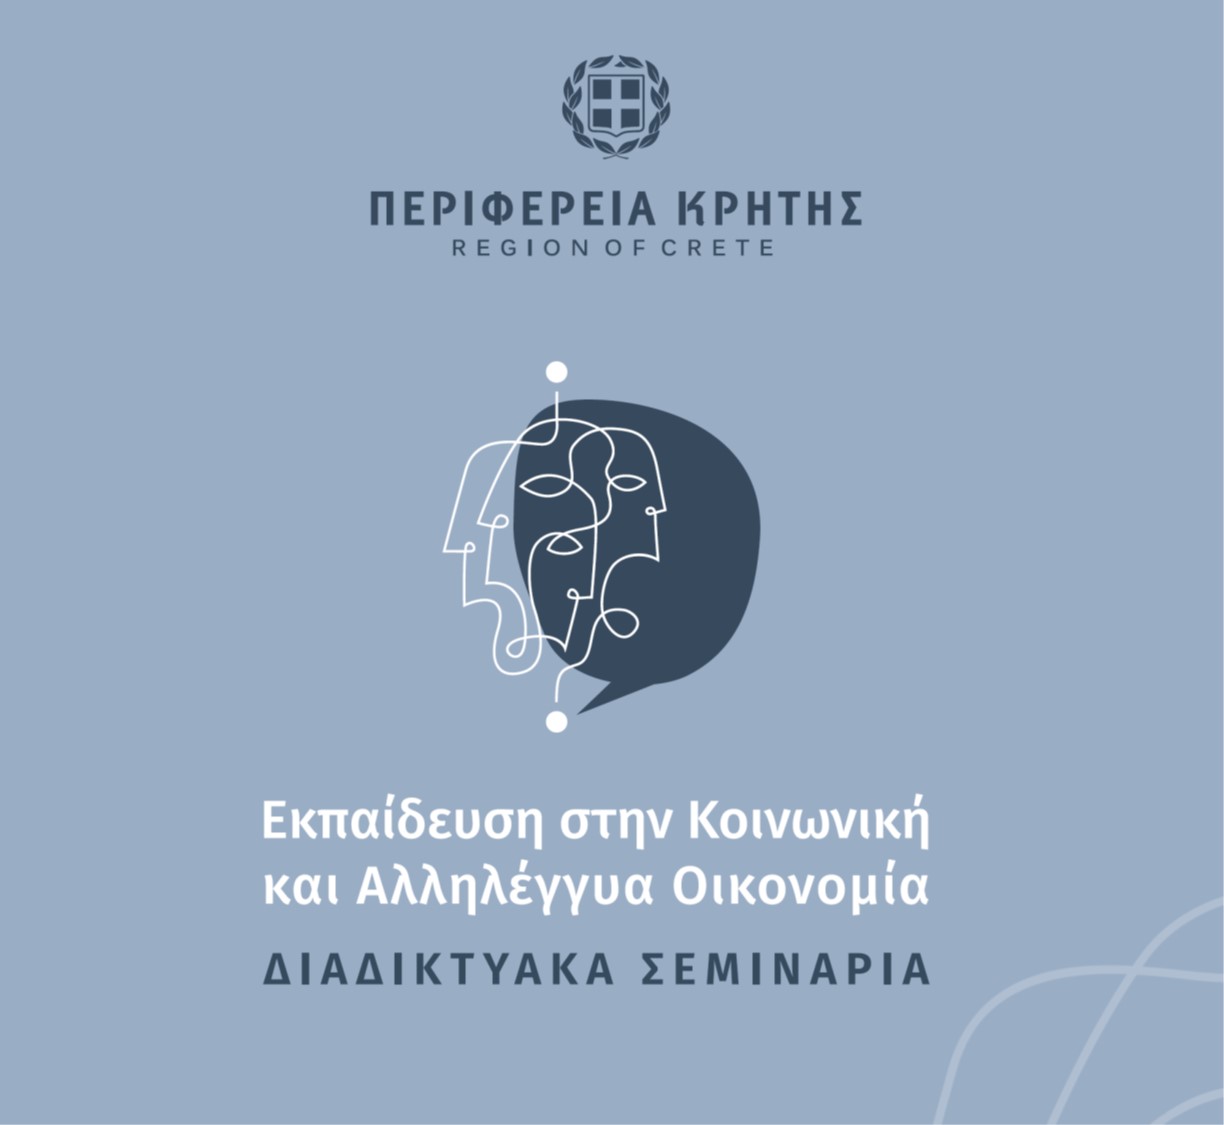 1ος Κύκλος Σεμιναρίων για την Κοινωνική και Αλληλέγγυα Οικονομία της Περιφέρειας Κρήτης